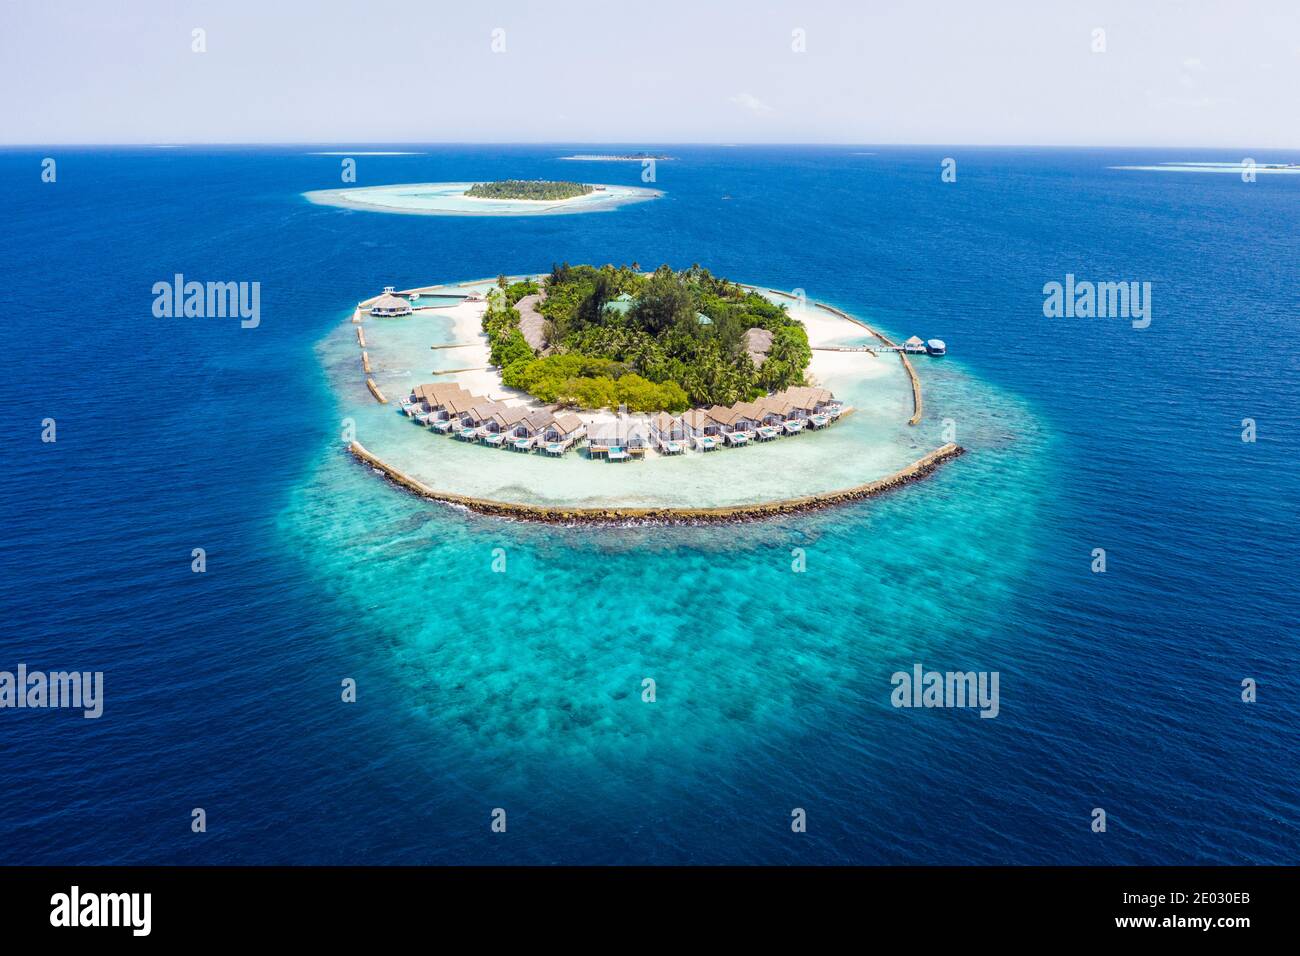 Vacation Island Kuda Rah, Ari Atoll, Indian Ocean, Maldives Stock Photo